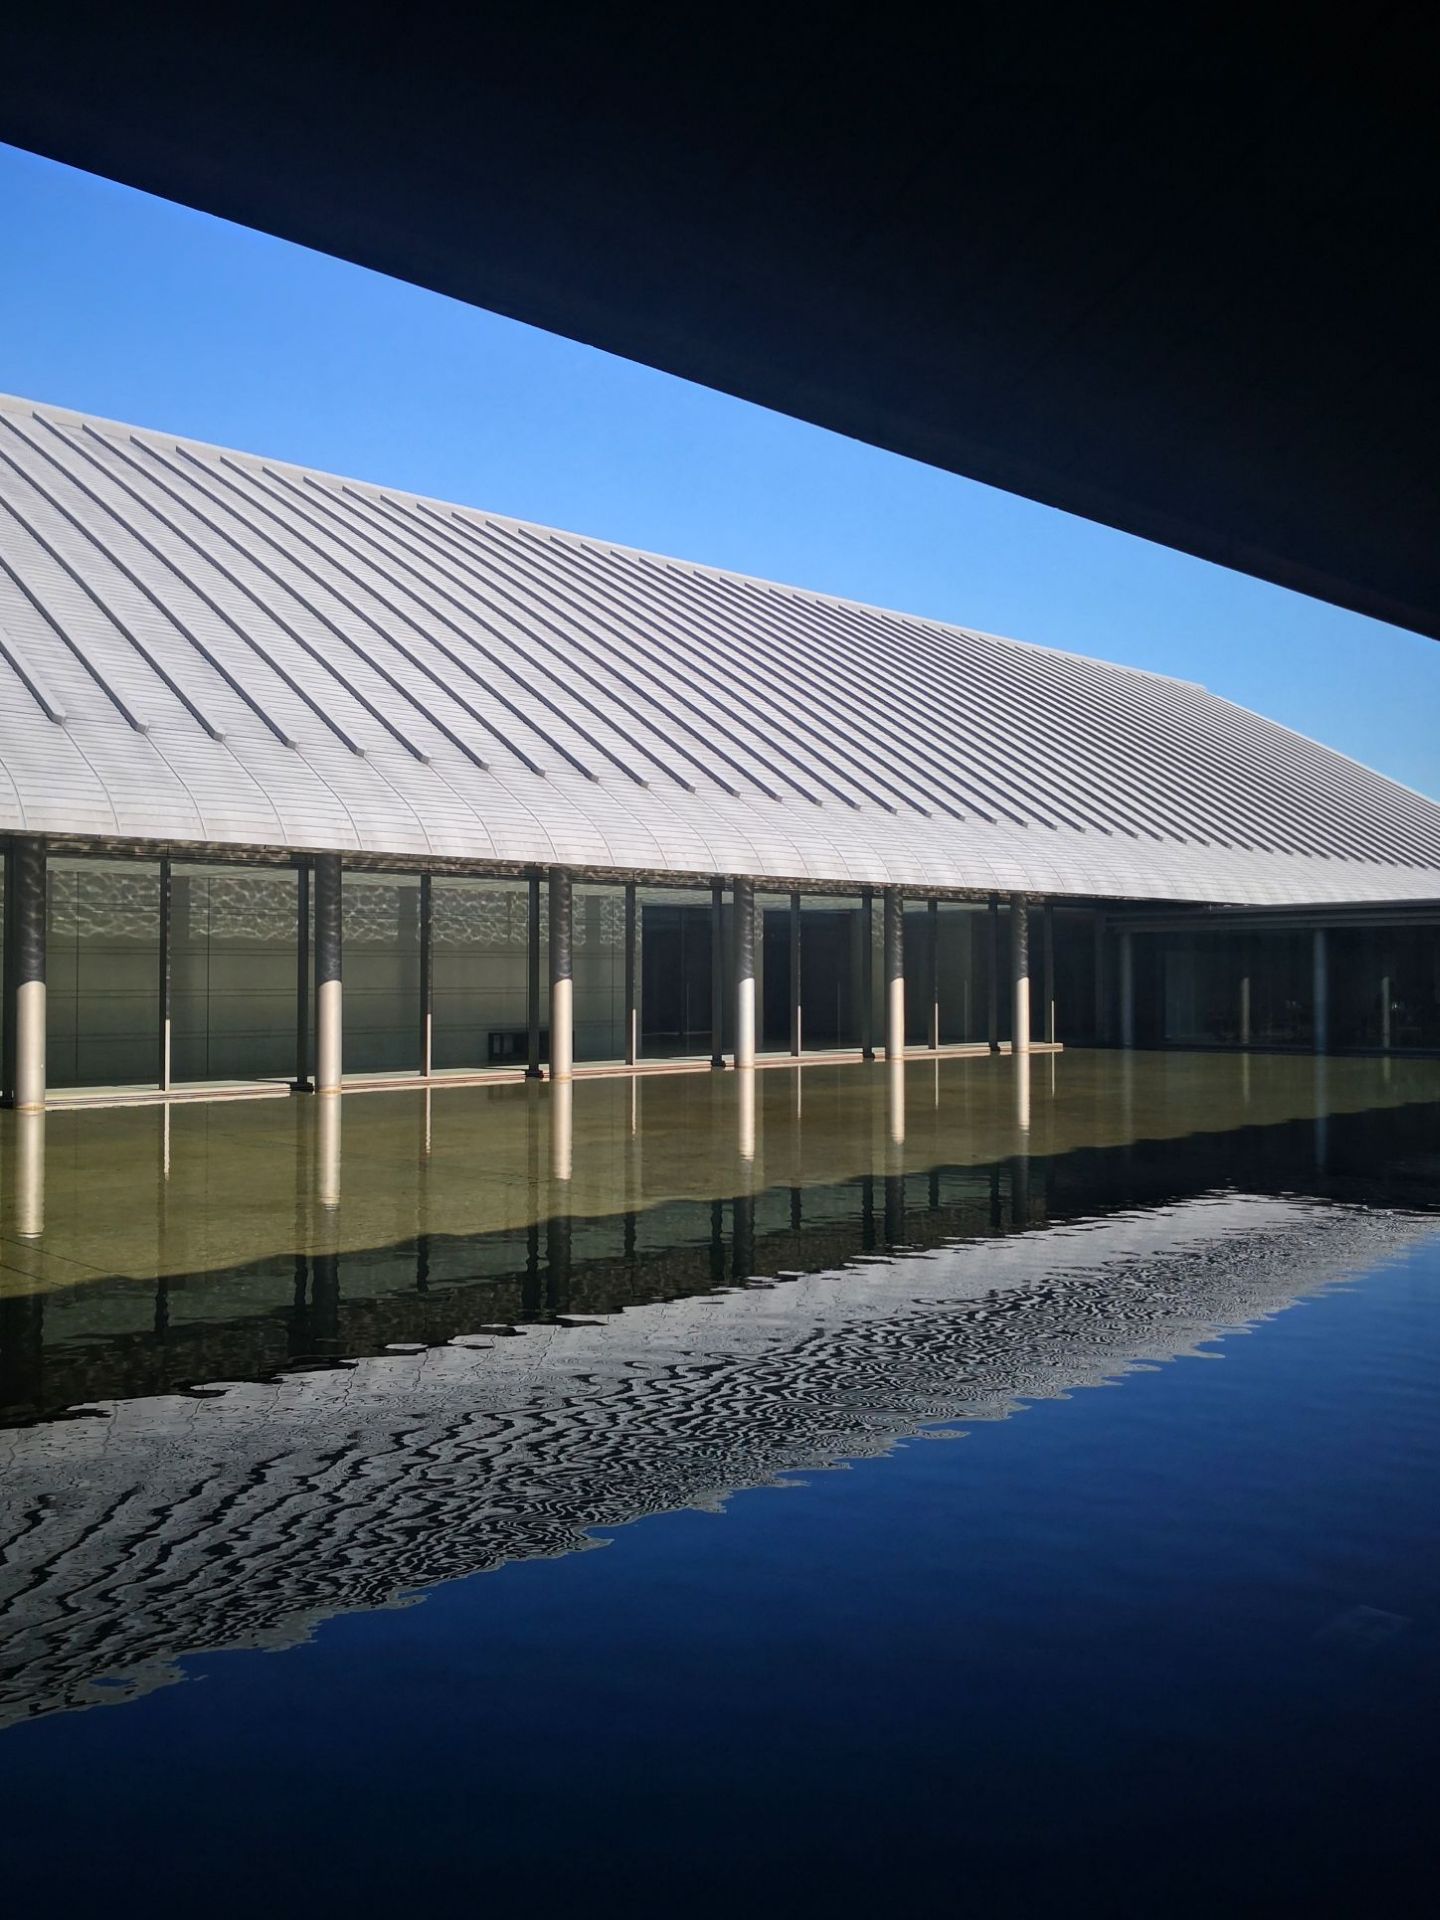 漂在水上的美术馆 佐川美术馆    第三次参观佐川美术馆，天气很好，蓝蓝的天上白云飘，心情很好，带着